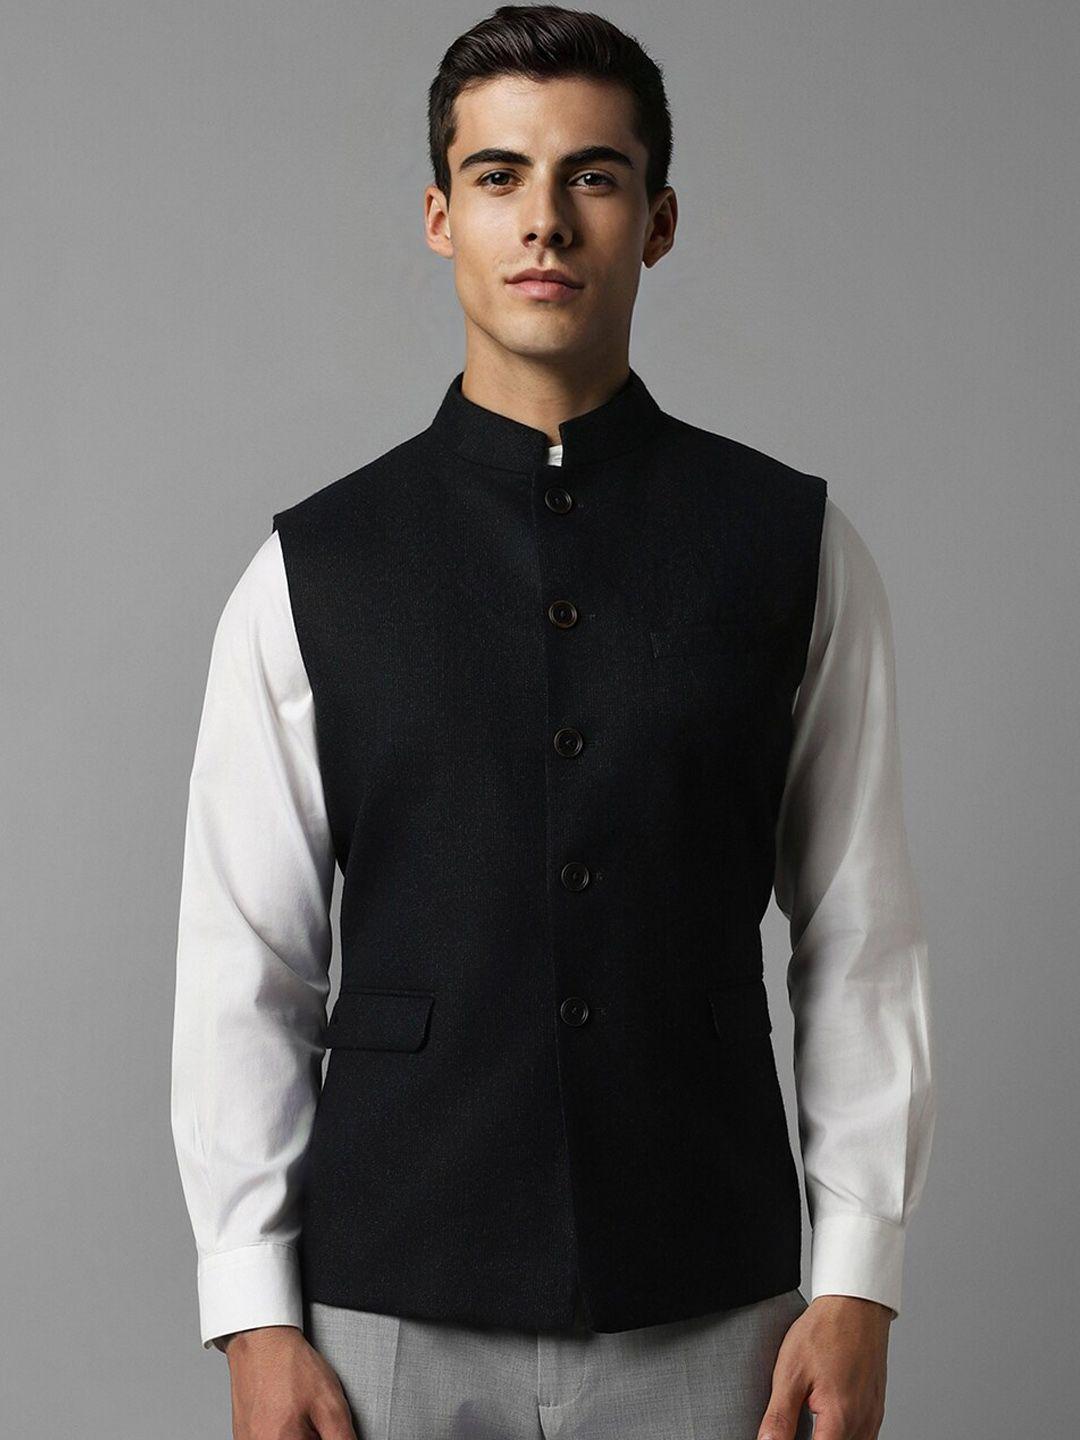 louis-philippe-textured-mandarin-collar-slim-fit-pure-woollen-nehru-jacket